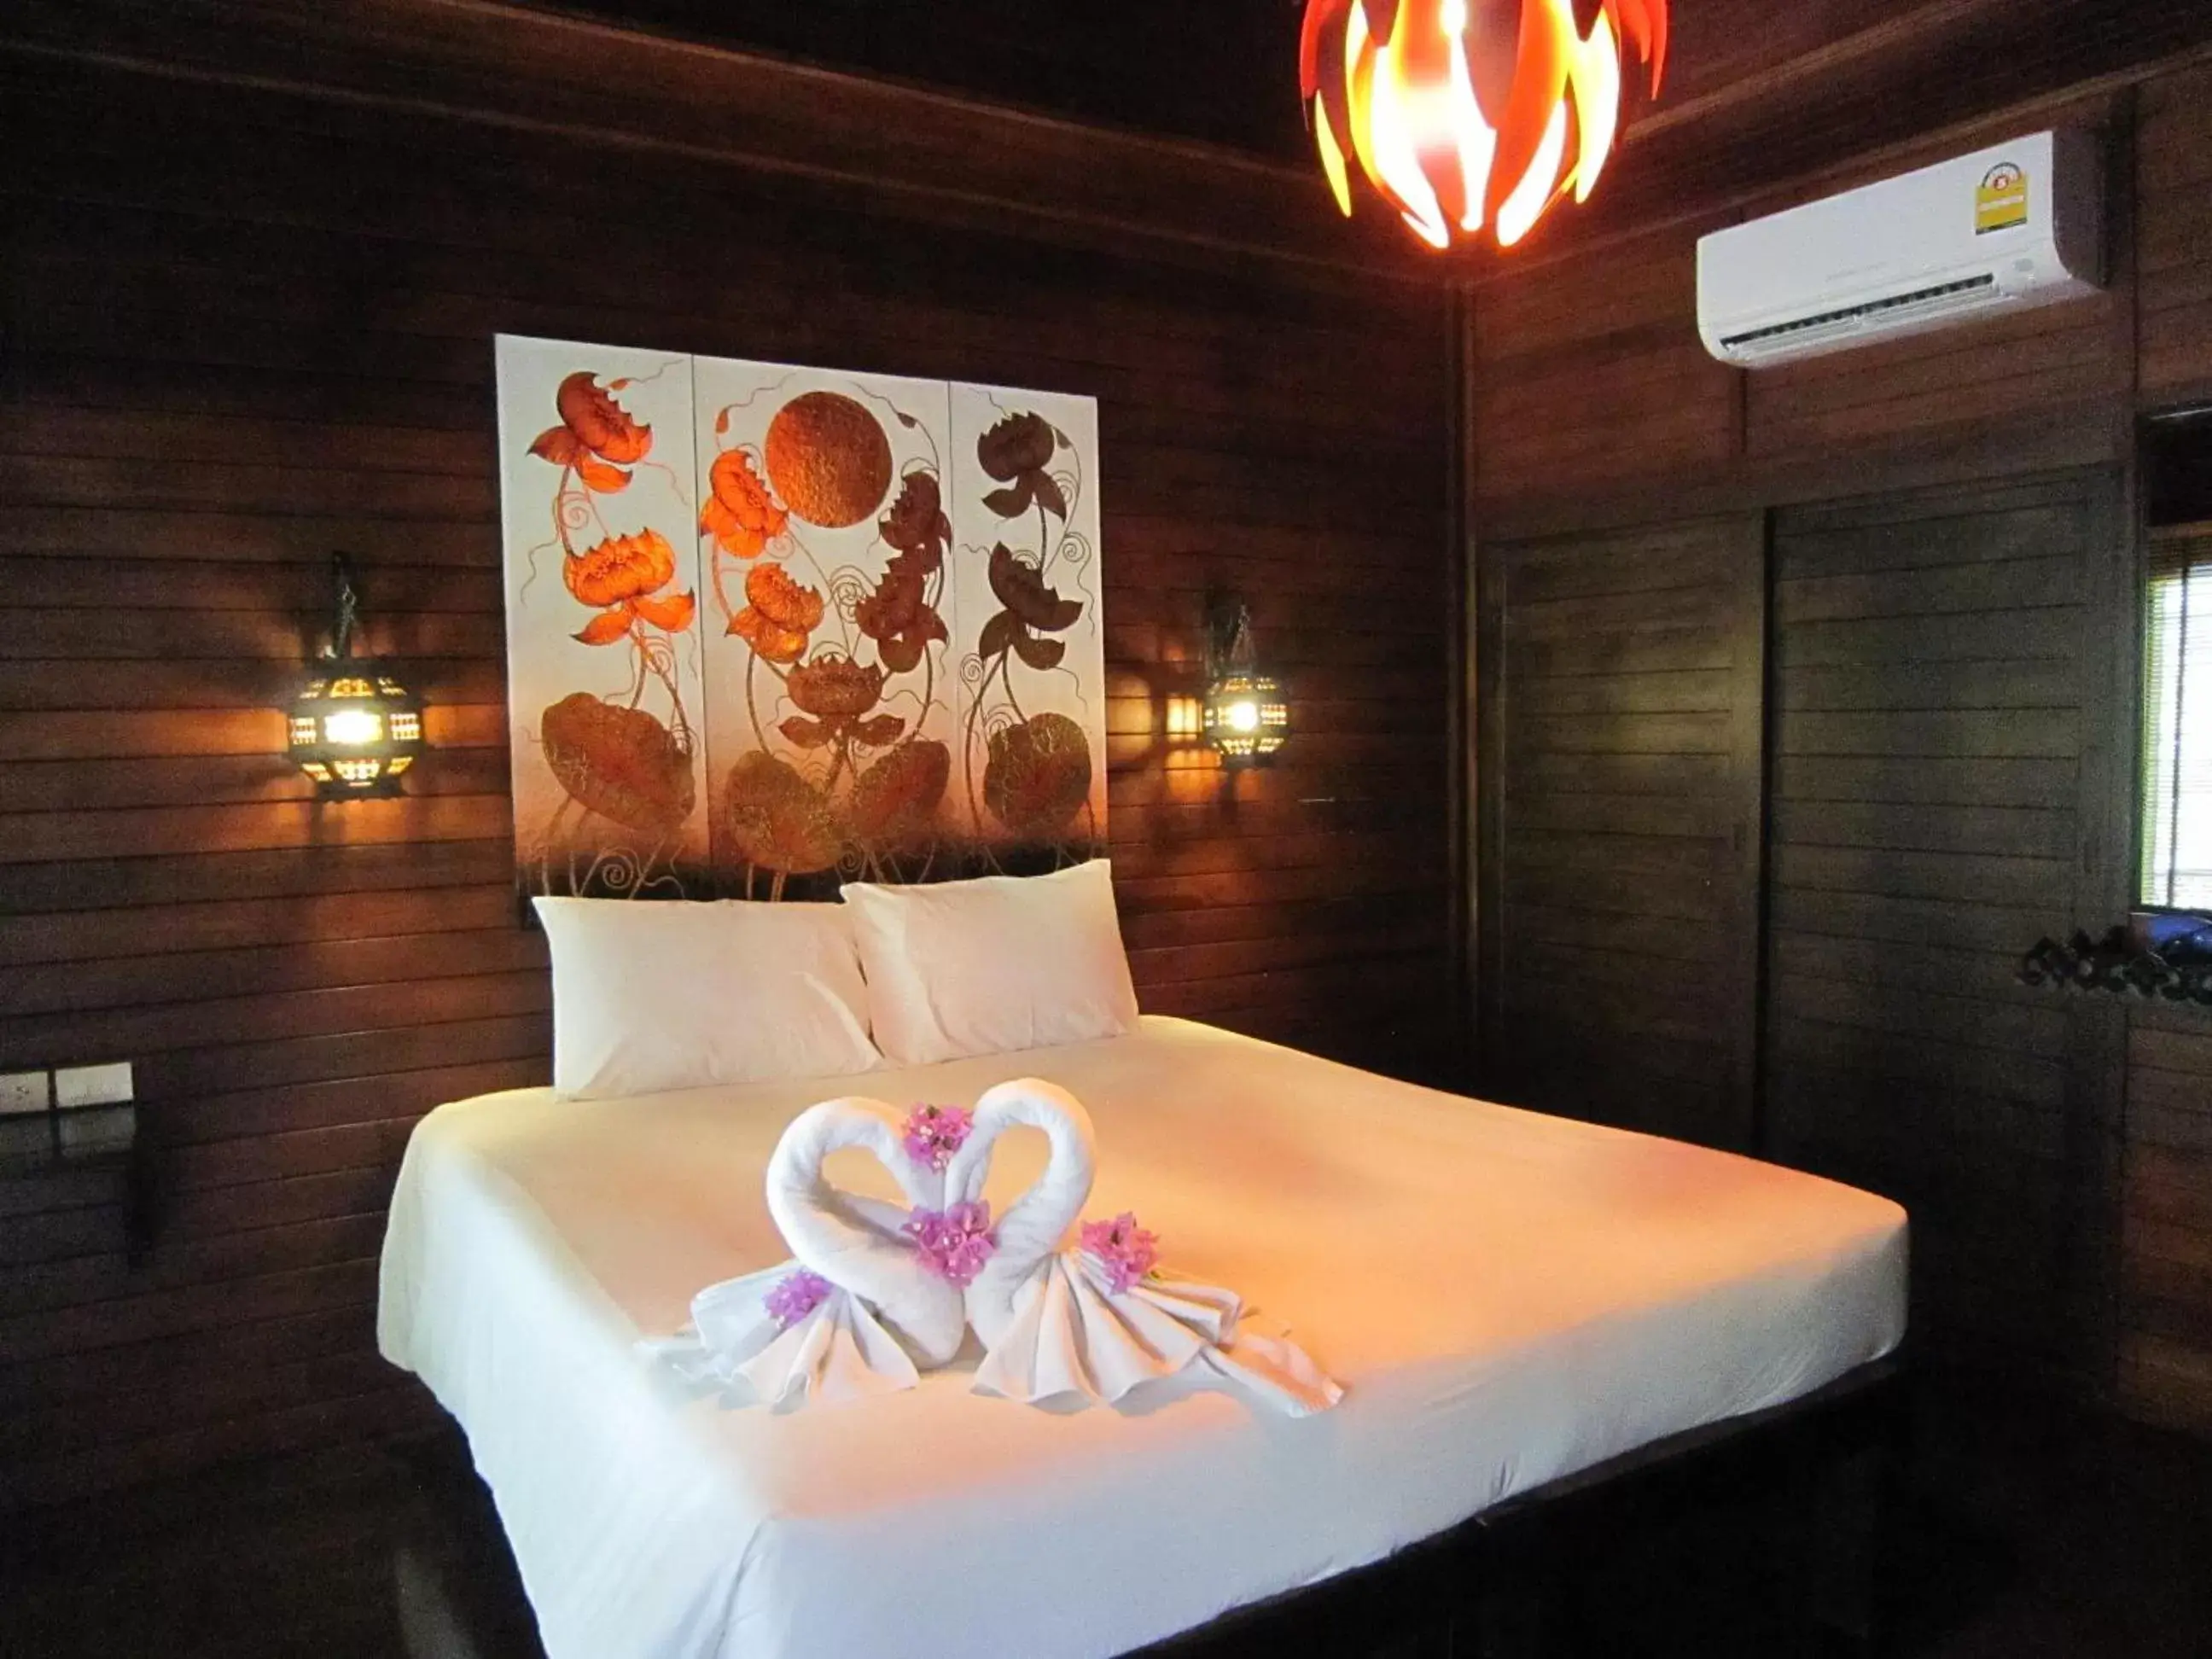 2 Bedrooms Family Bungalow with Bathtub in Baan Habeebee Resort